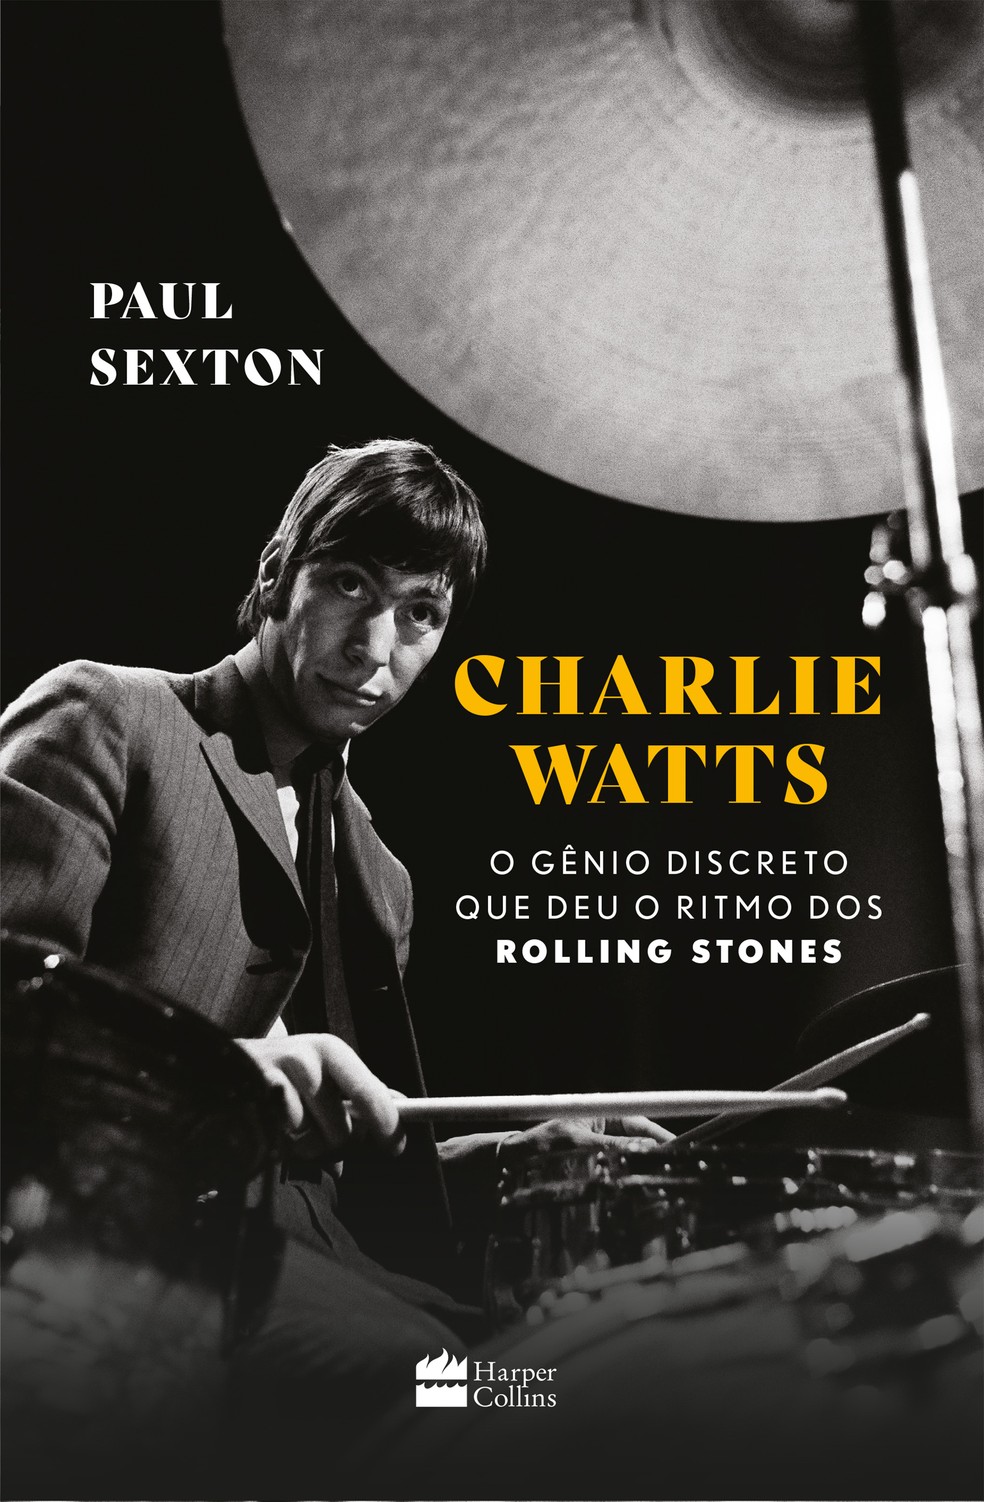 Capa do livro "Charlie Watts o gênio discreto que deu o ritmo dos Rolling Stones", de Paul Sexton — Foto: Reprodução